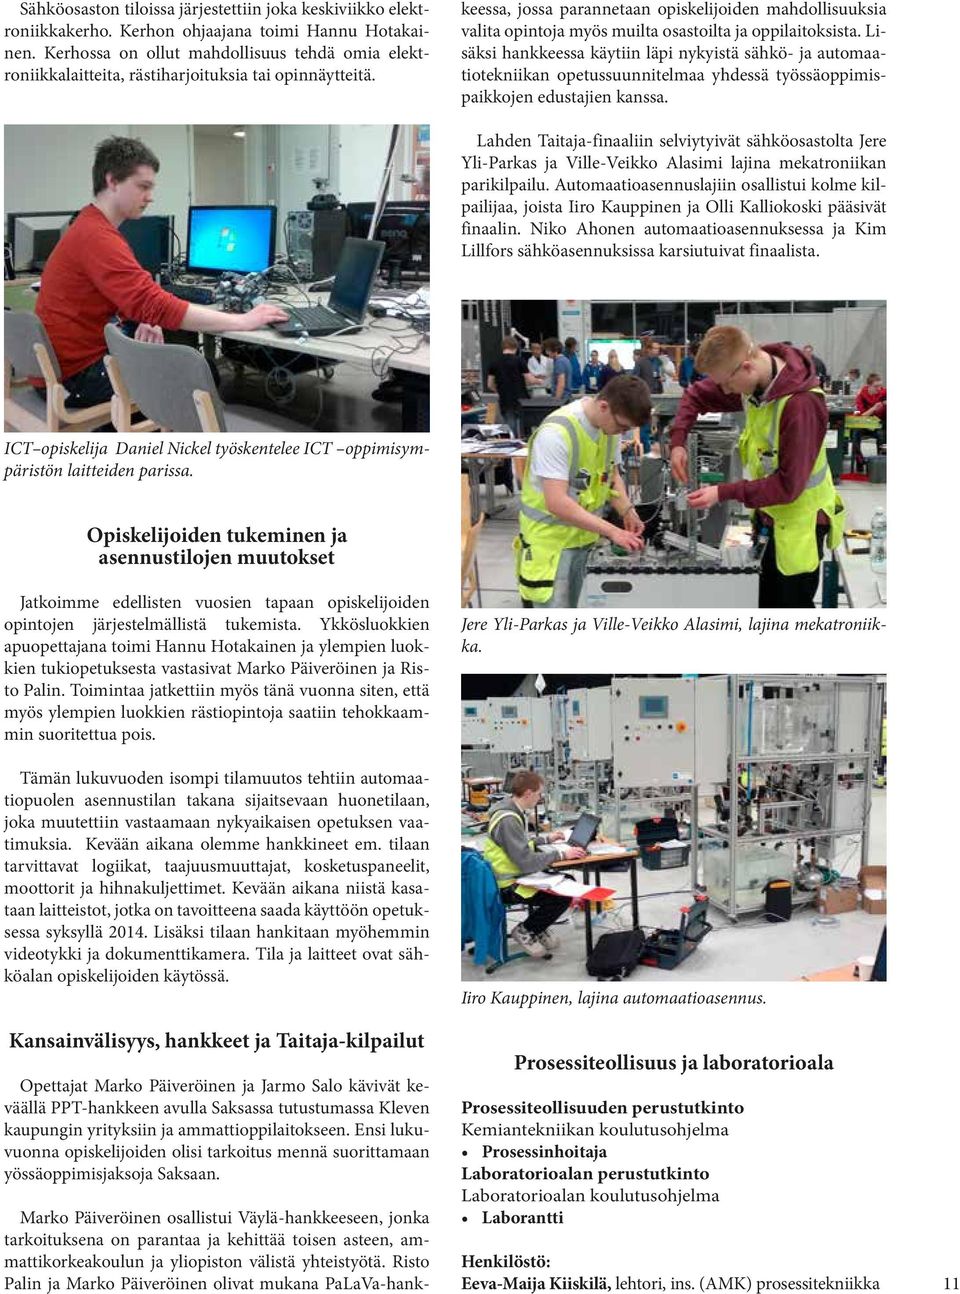 Marko Päiveröinen osallistui Väylä-hankkeeseen, jonka tarkoituksena on parantaa ja kehittää toisen asteen, ammattikorkeakoulun ja yliopiston välistä yhteistyötä.